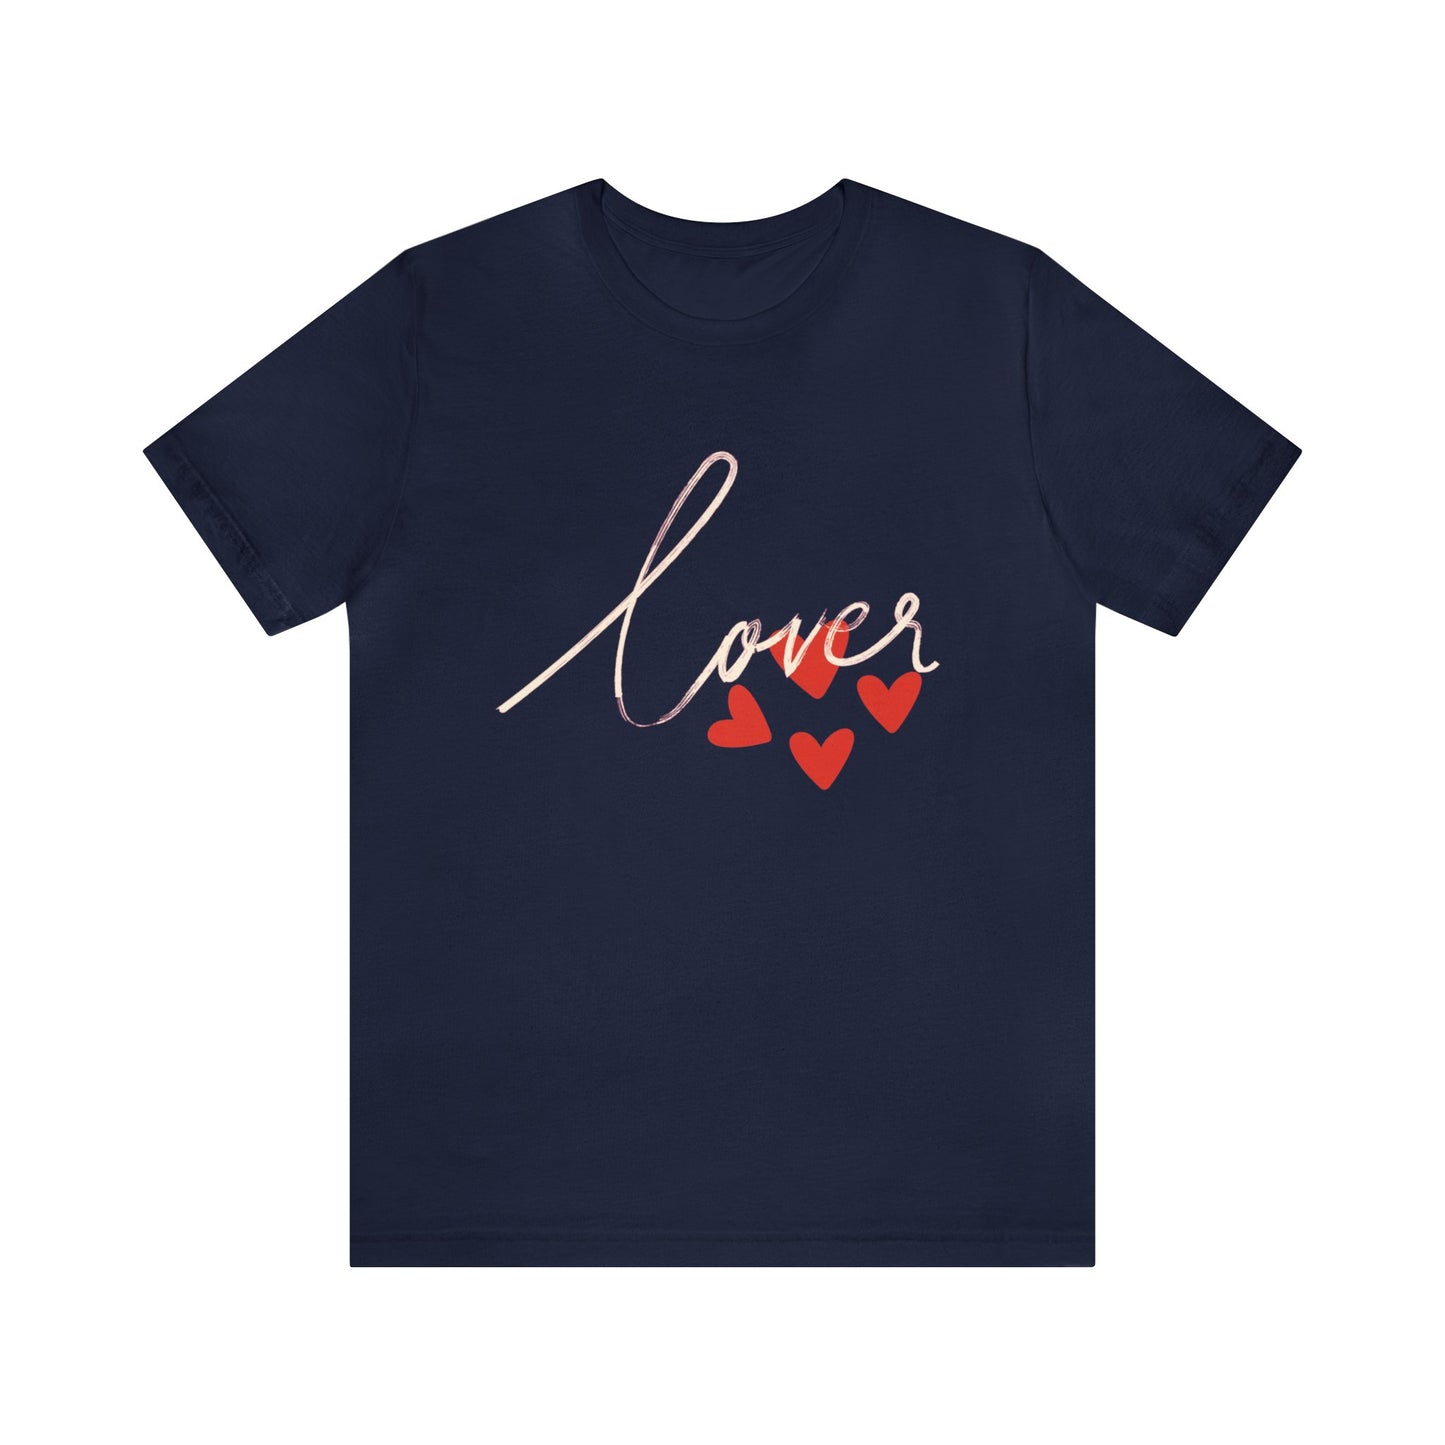 Lover shirt for him, lover shirt for boyfriend, lover shirt for lover, lover shirt for girl friend, lover shirt for valentine day, T938